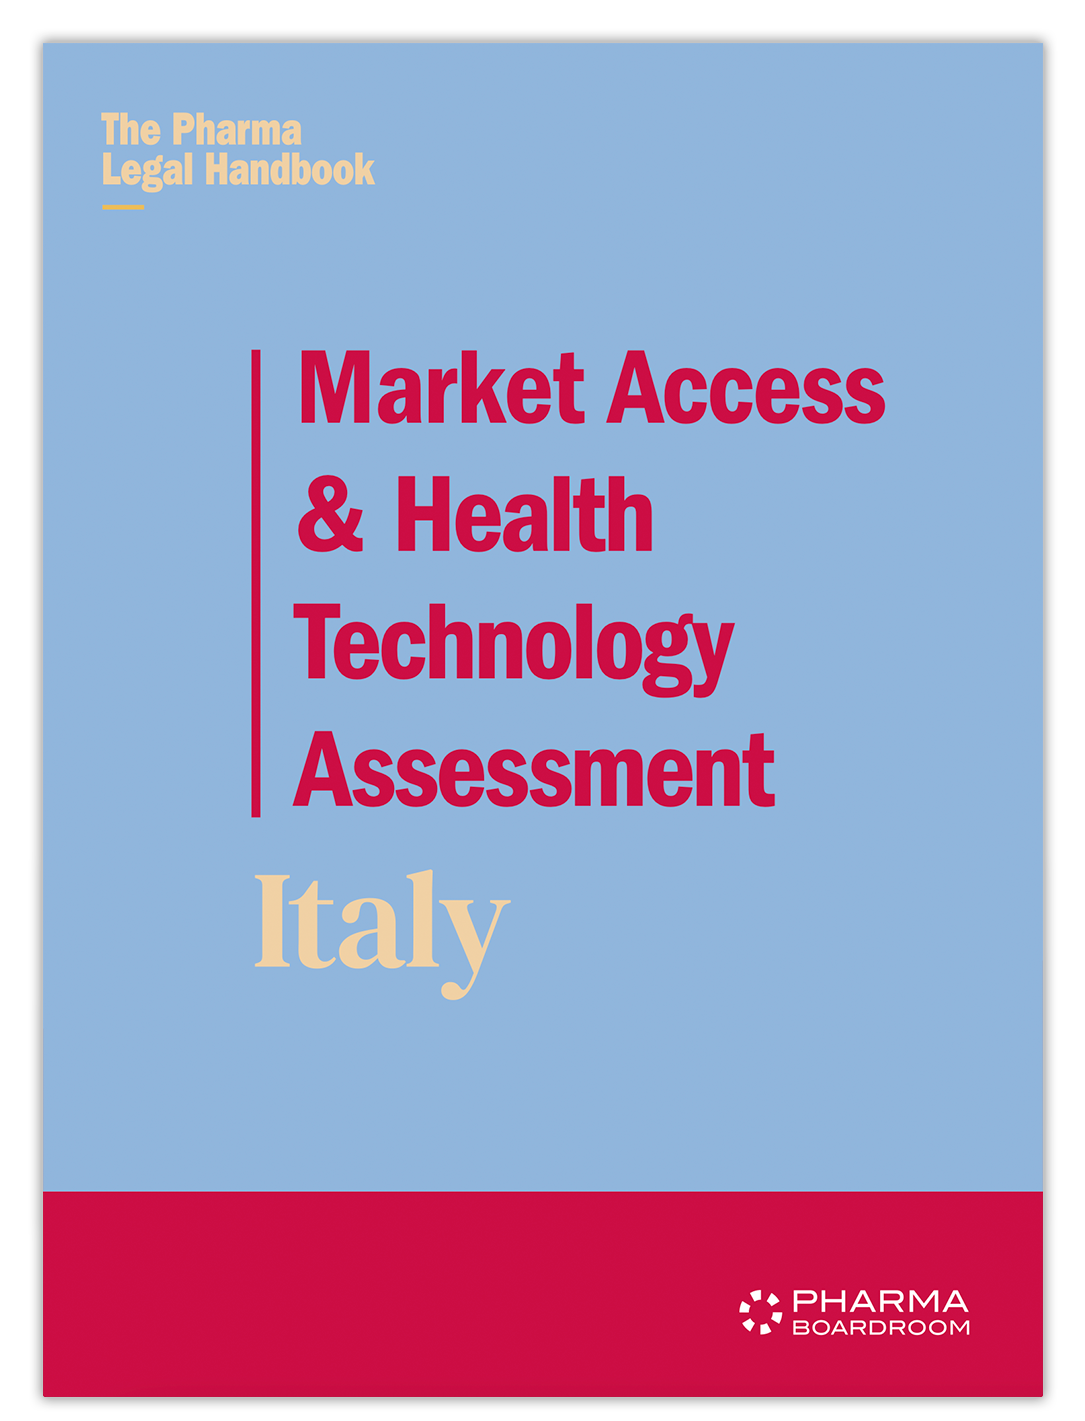 Market Access & HTA Italy